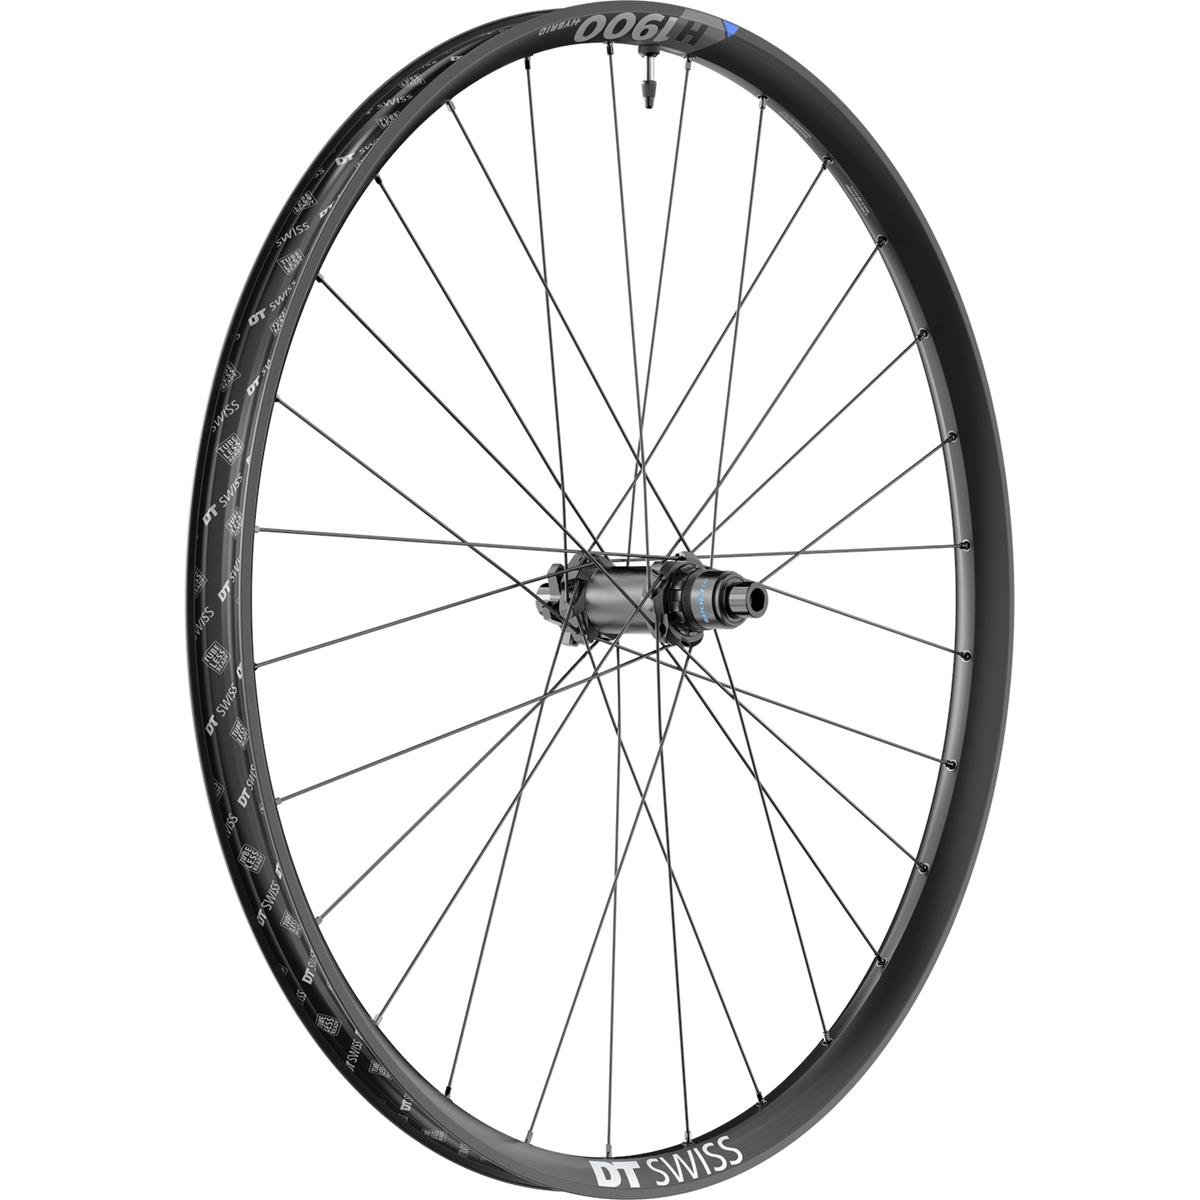 DT Swiss Wheel H 1900 Spline Rear, 27.5 inch, aluminum, 12x148 mm TA Boost, IS 6-Bolt, Sram XD, 35 mm